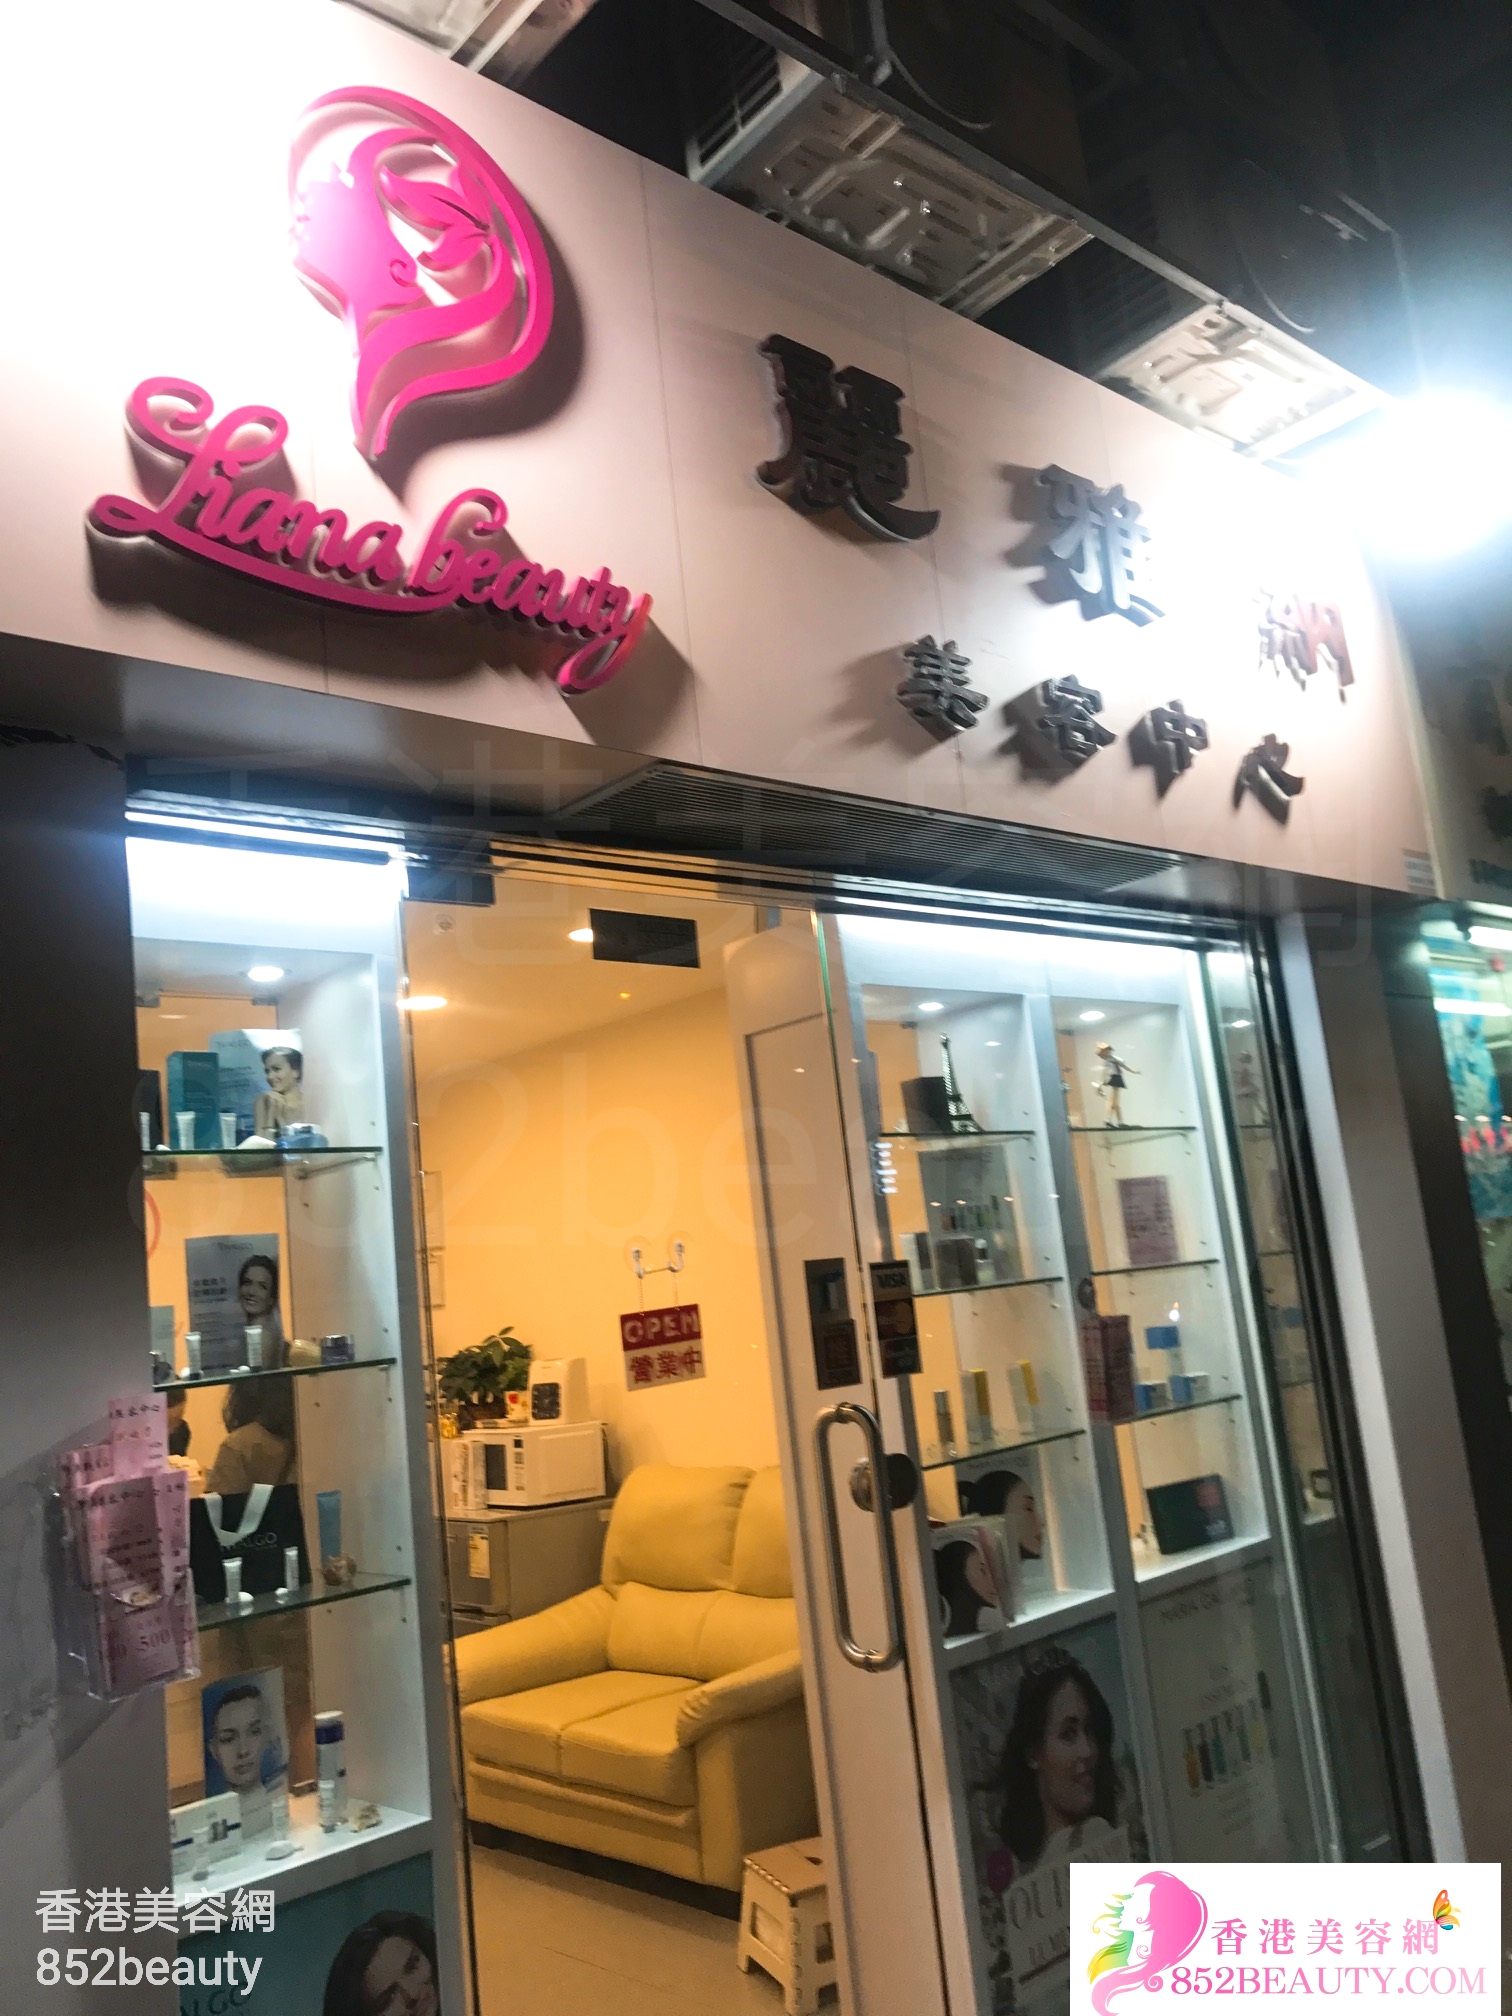 香港美容網 Hong Kong Beauty Salon 美容院 / 美容師: Liana Beauty 麗雅納美容中心